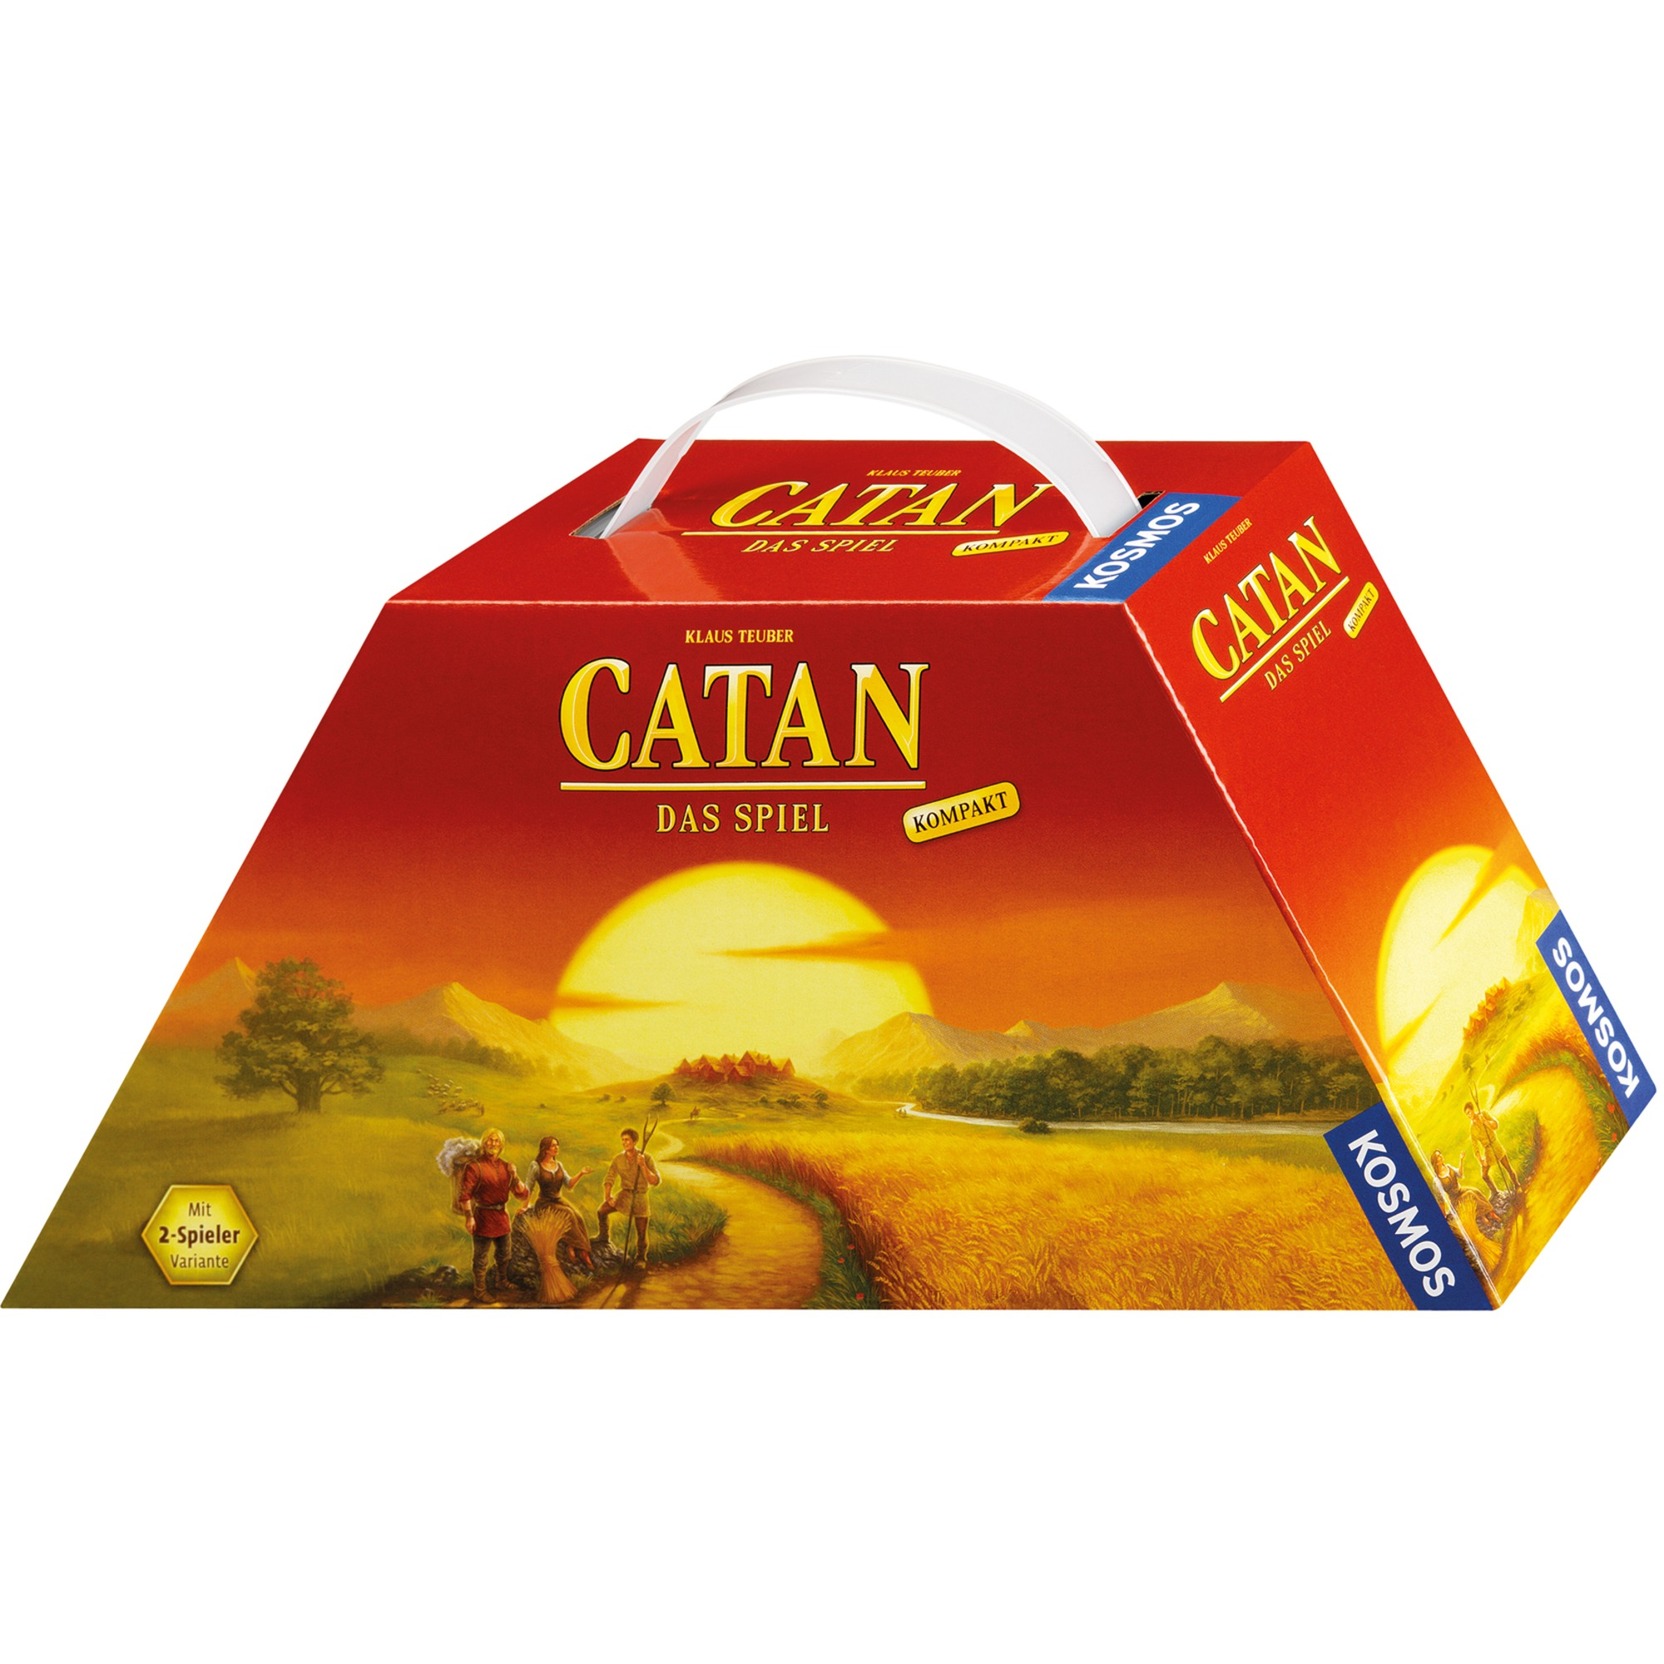 Image of Alternate - CATAN - Das Spiel - kompakt, Brettspiel online einkaufen bei Alternate